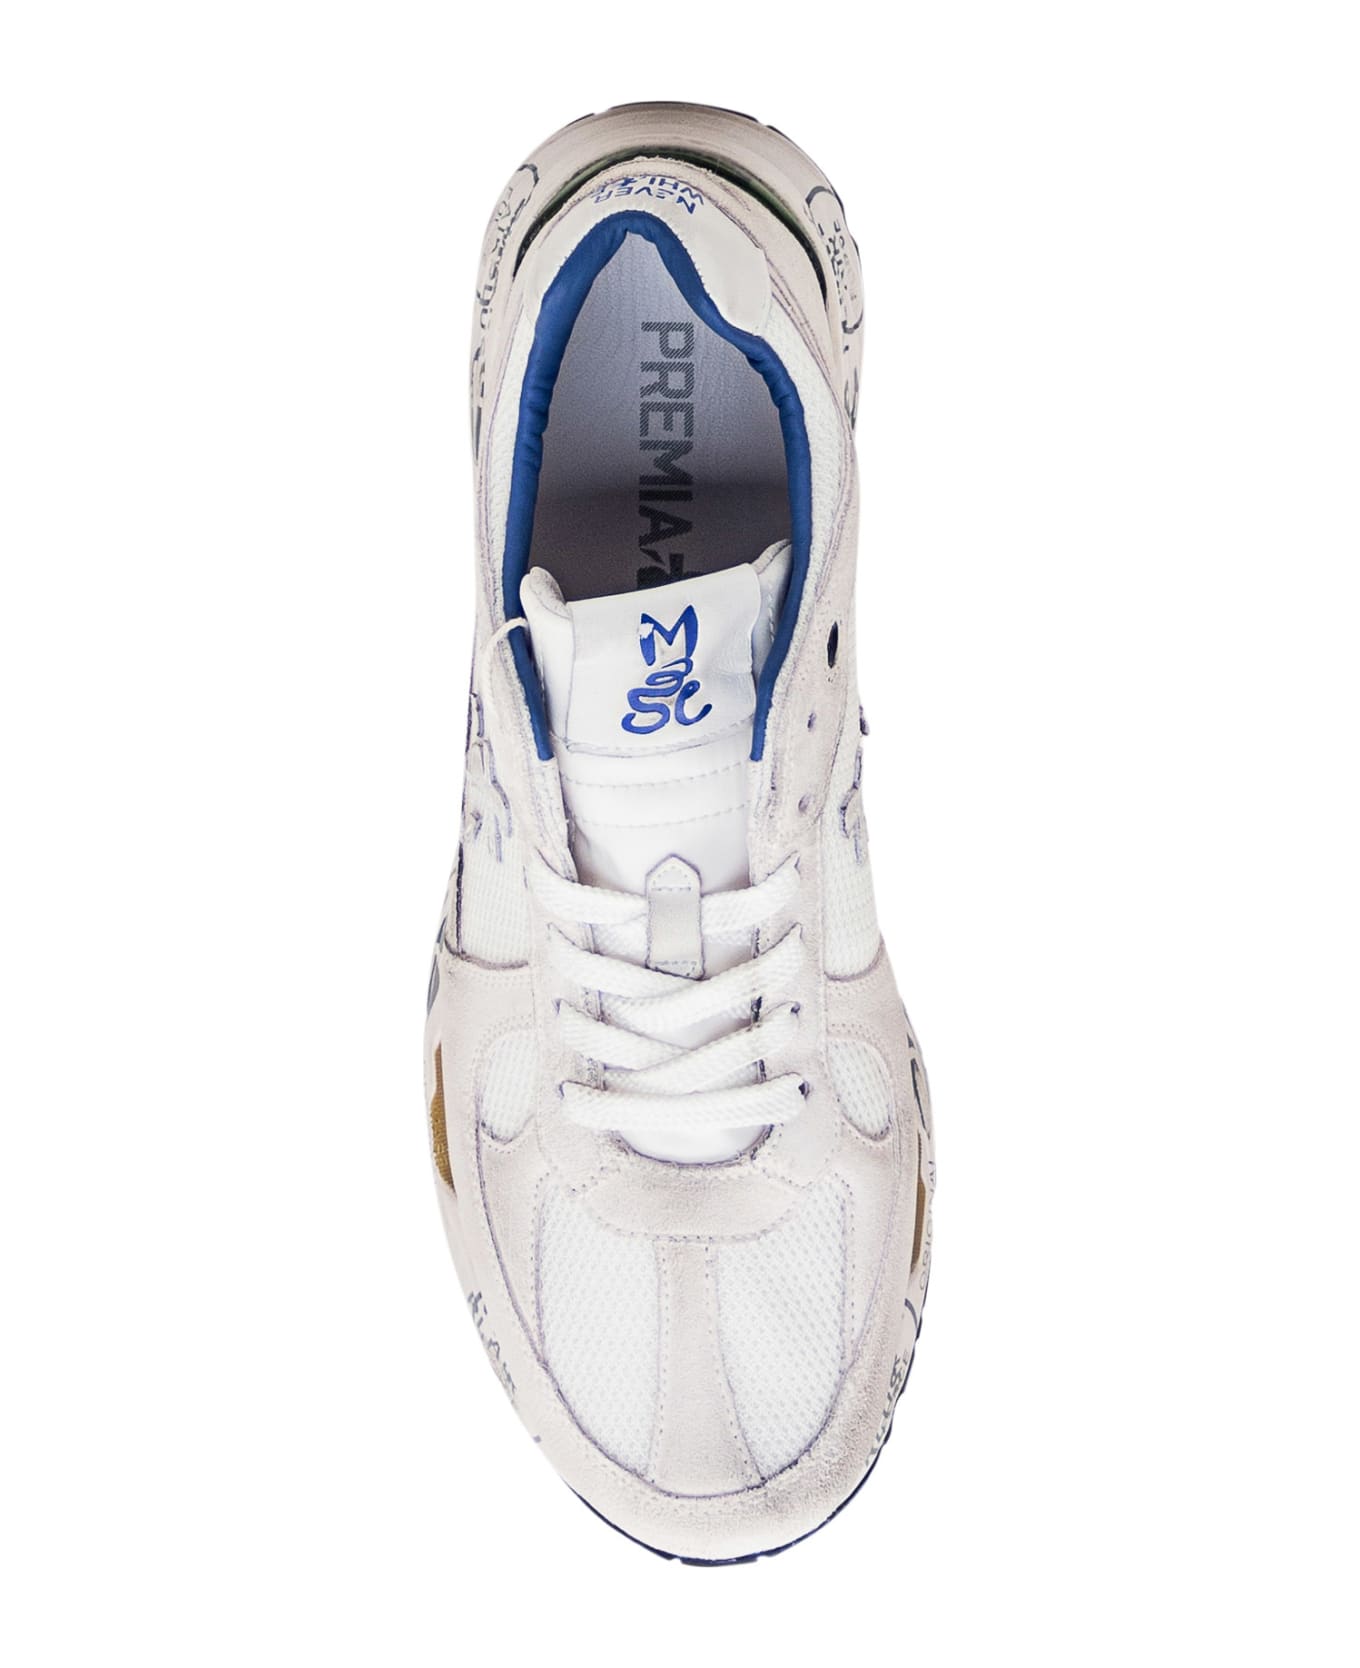 Premiata Mase 6621 Sneaker - White